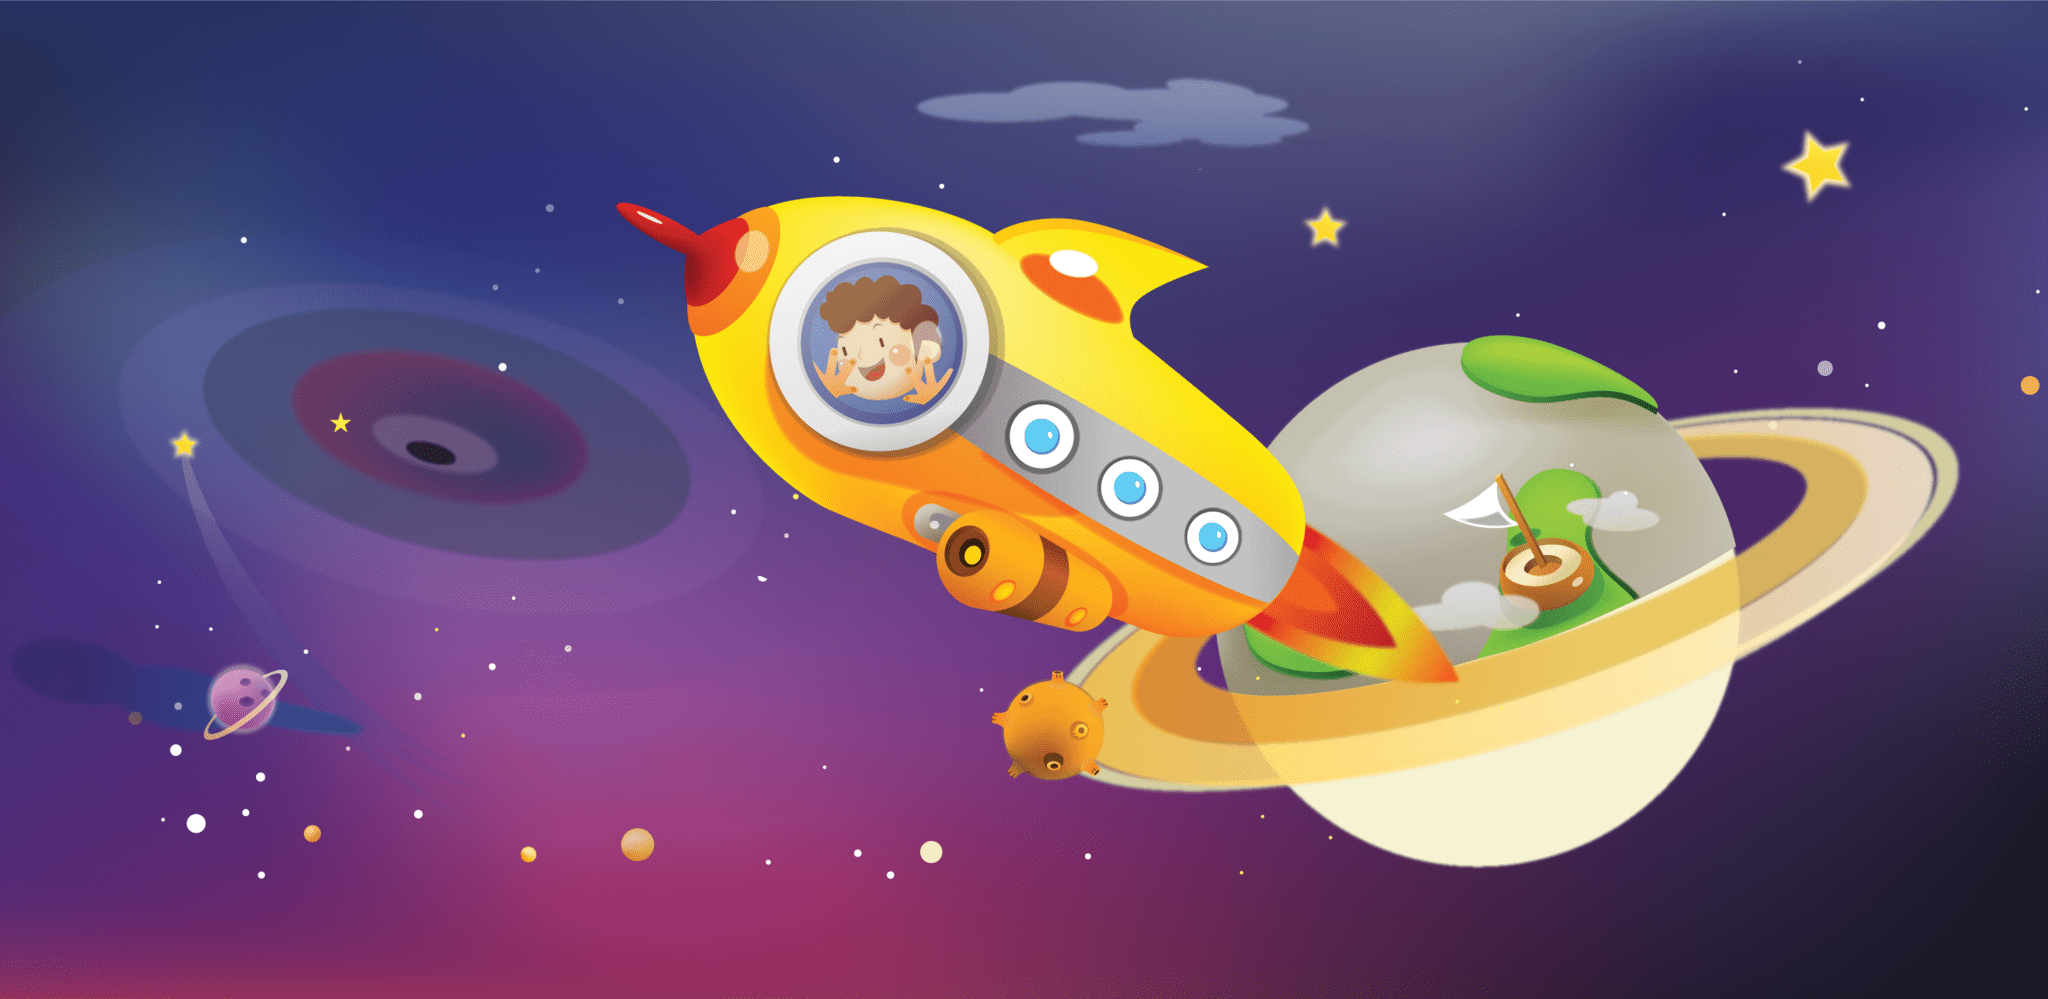 Картинка день космонавтики для дошкольников. Детям о космосе. Космическое путешествие для дошкольников. Космическая тематика для детей. Картинки на тему космос для детей.